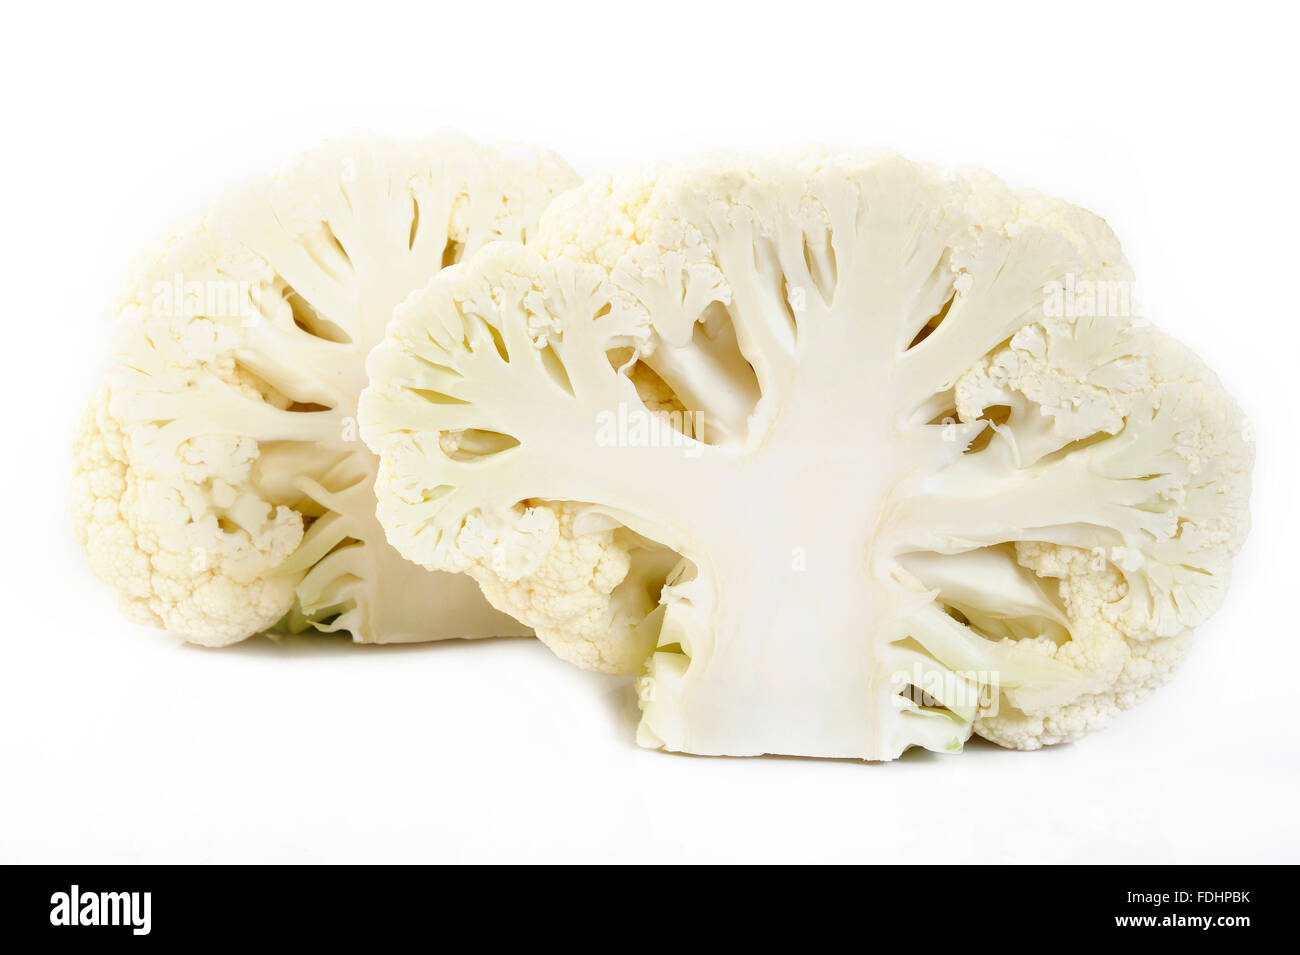 slice cauliflower isolated on the white background Stock Photo